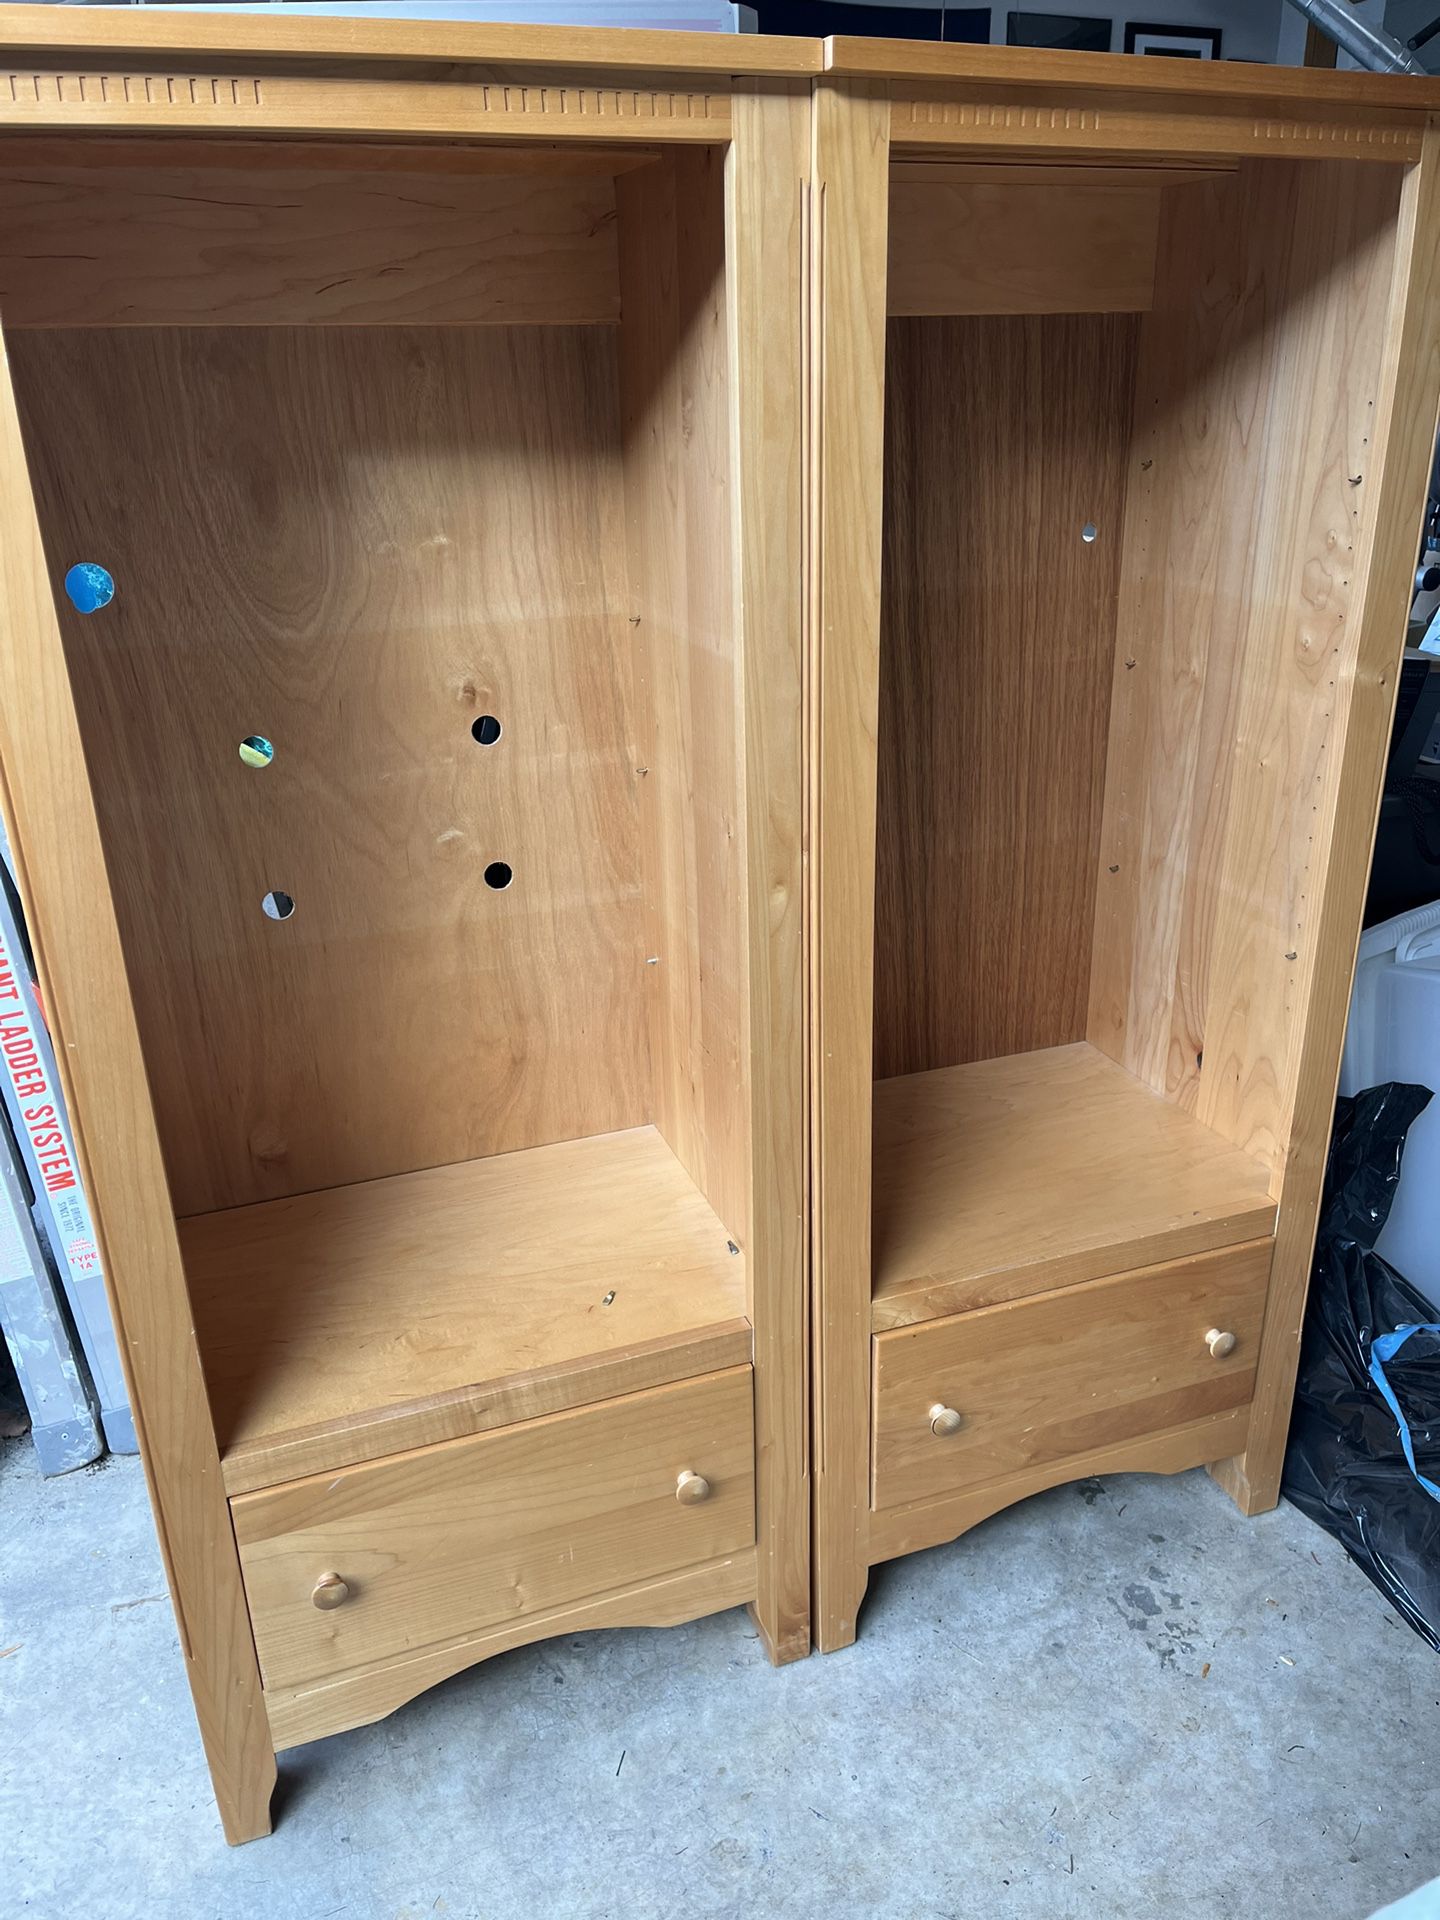 Solid Maple Wood Shelf Units